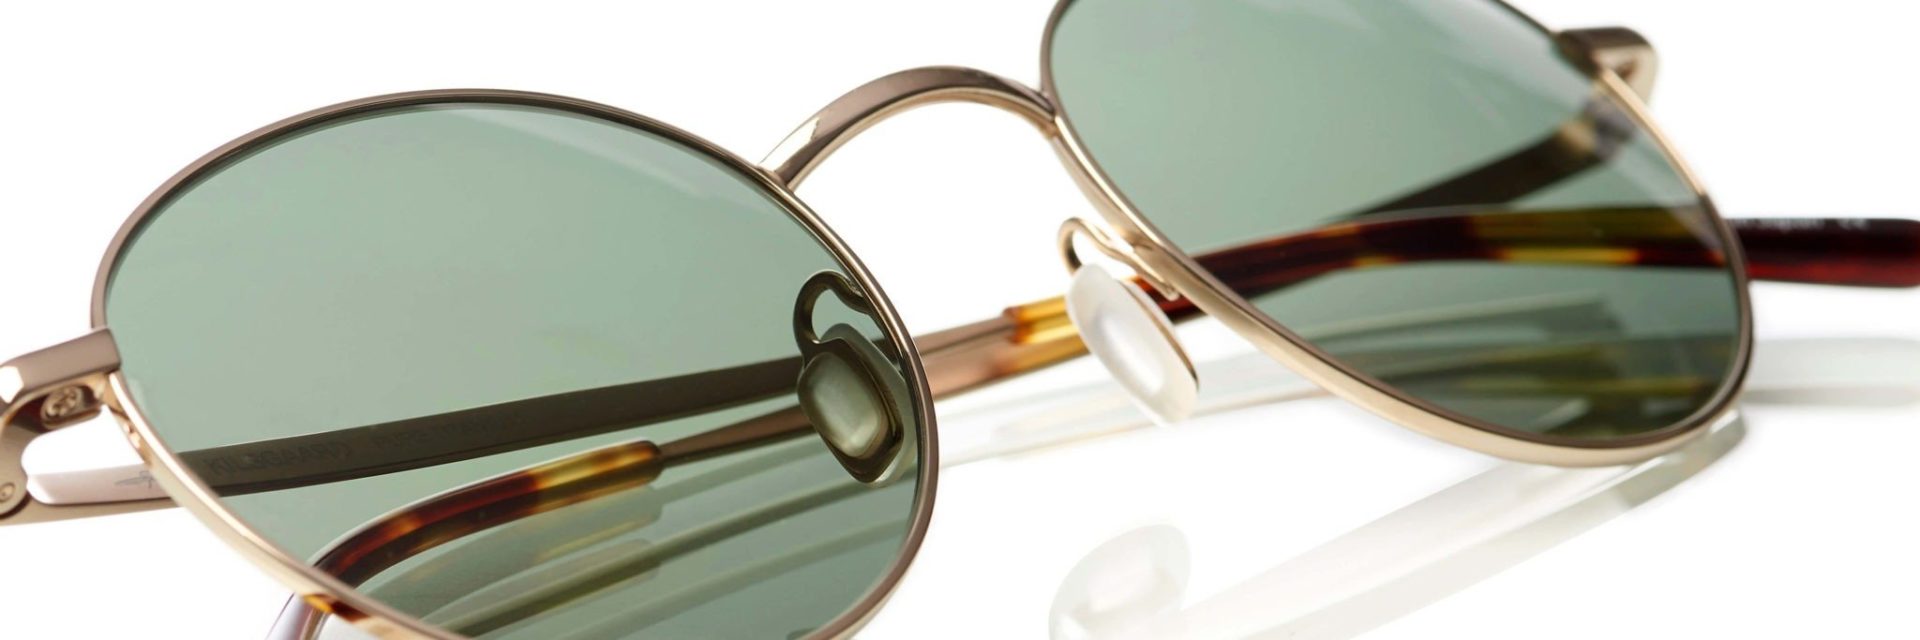 Samme pause Pudsigt Optik Team - Solbrilleglas er ikke bare solbrilleglas